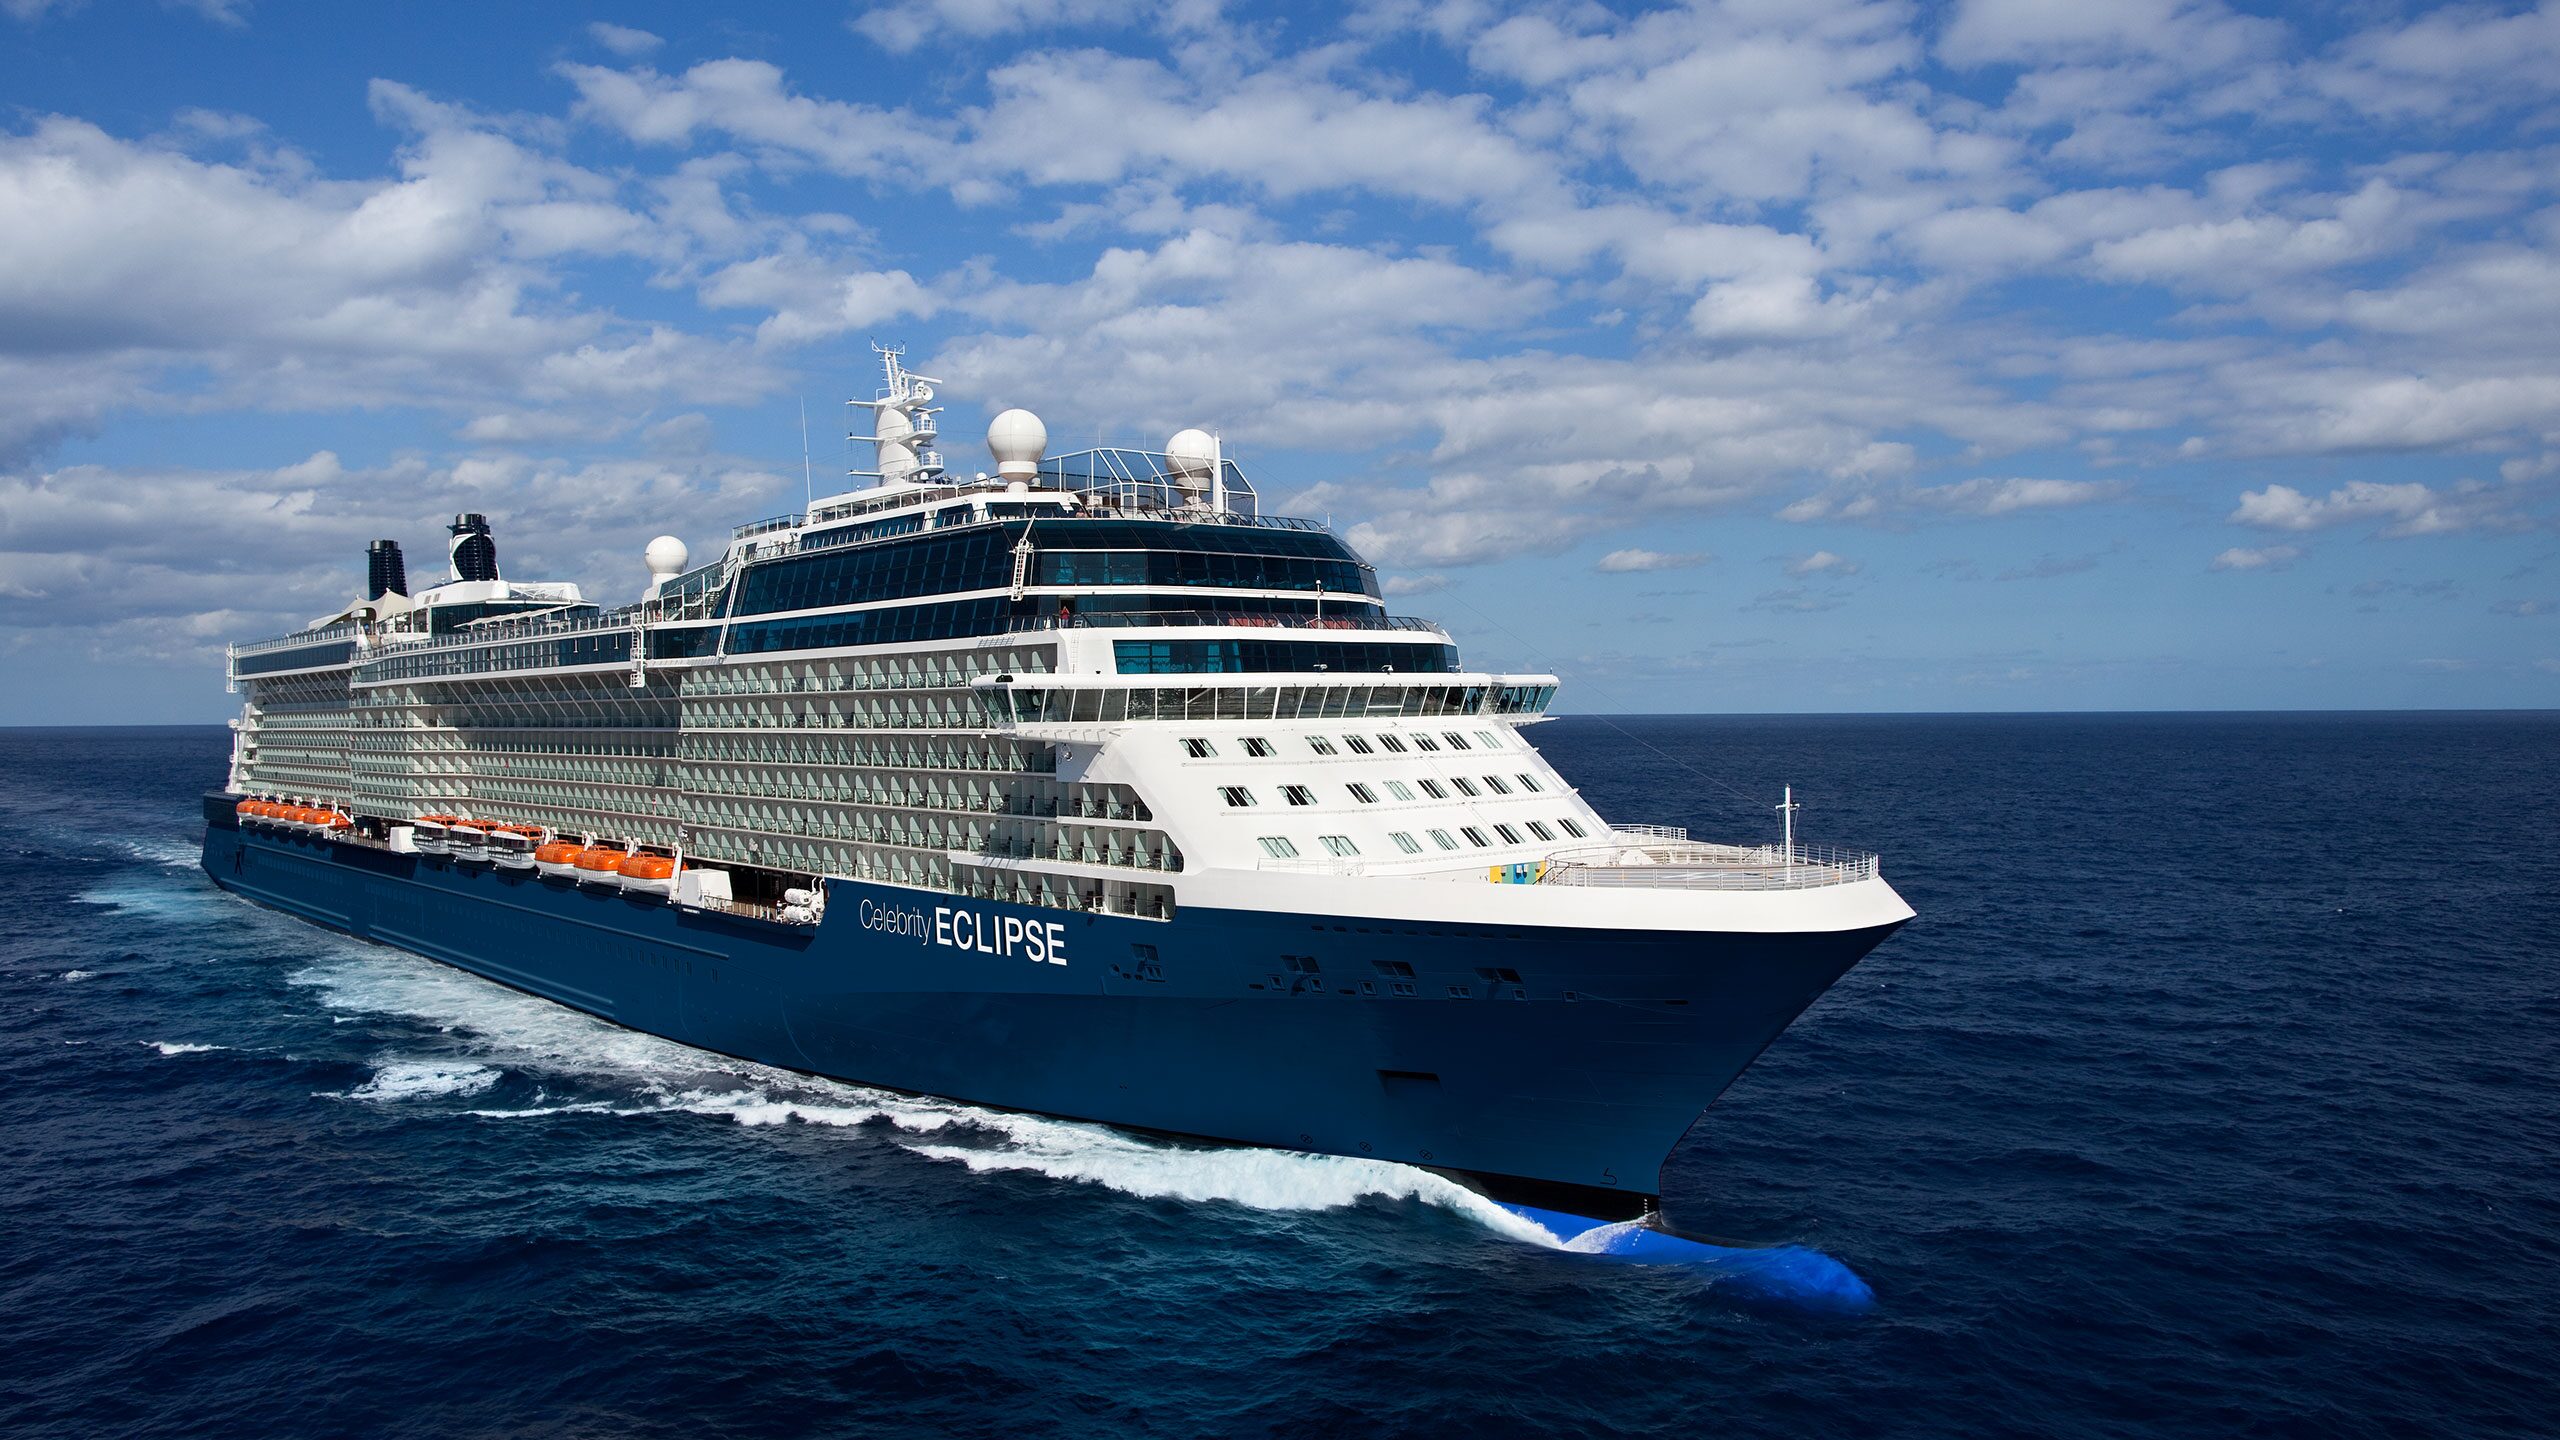 celebrity cruises from uk ports